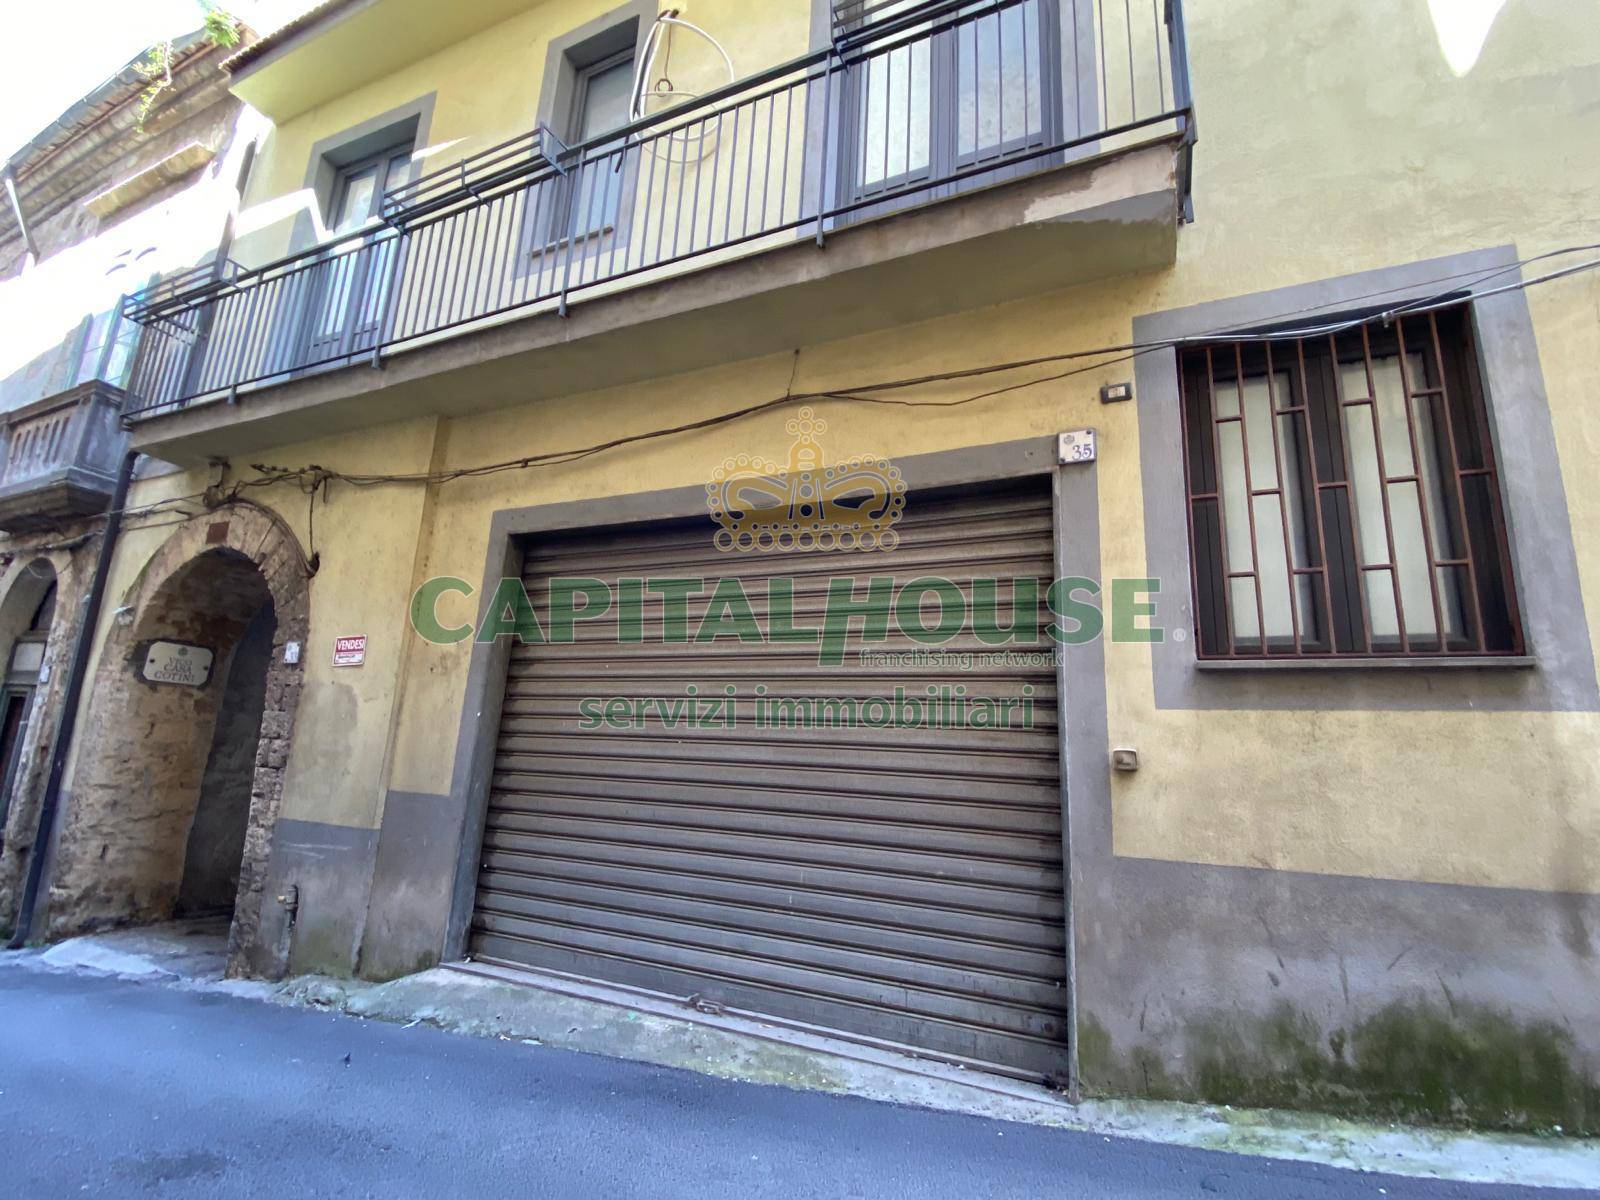 Negozio / Locale in vendita a Mercato San Severino, 9999 locali, prezzo € 69.000 | PortaleAgenzieImmobiliari.it